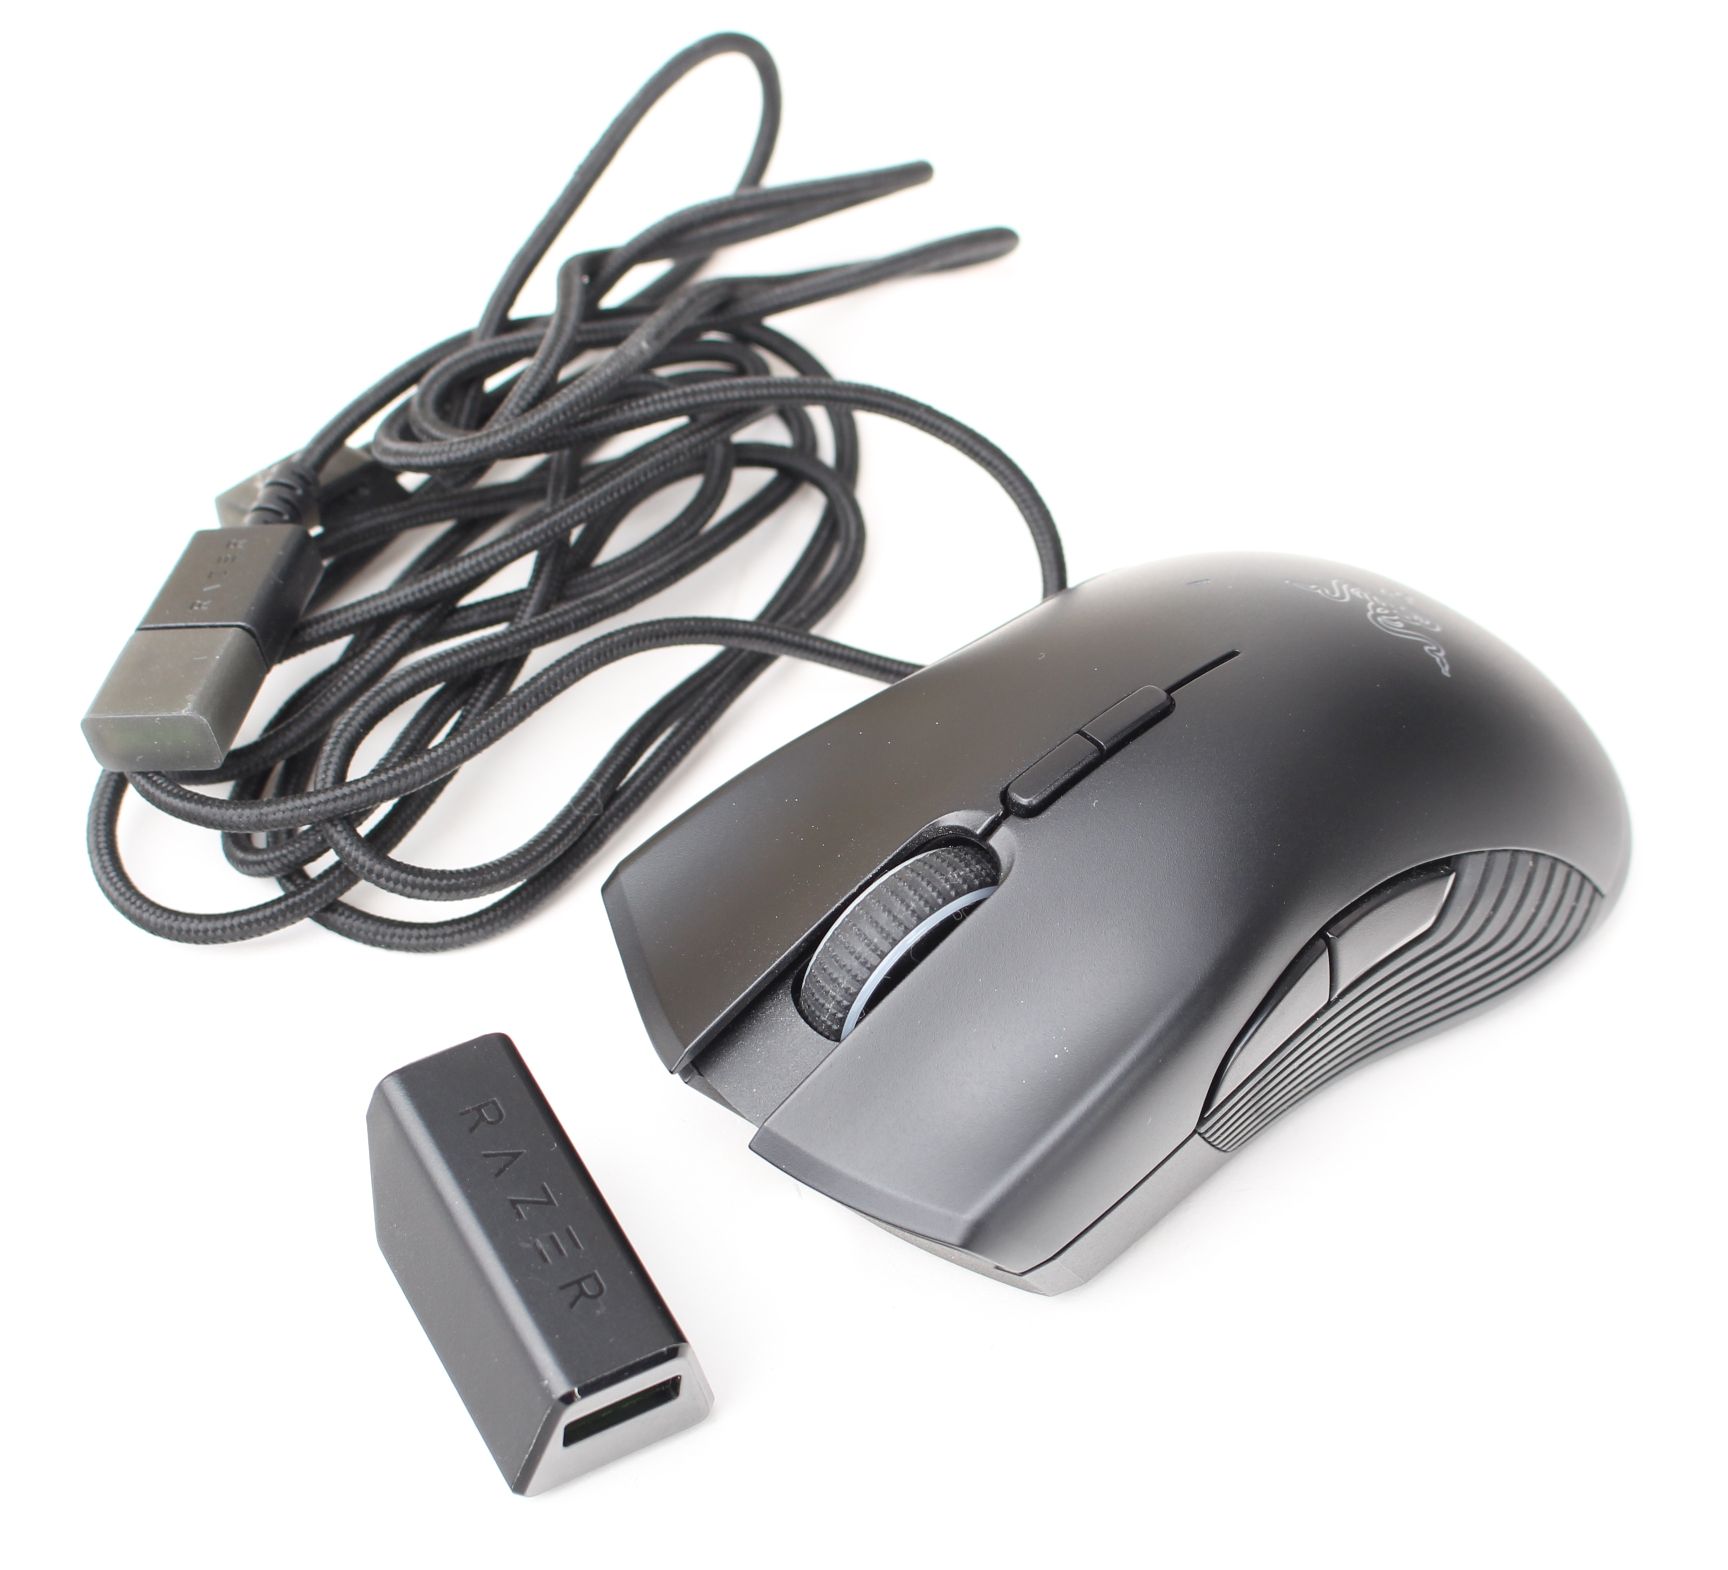 Razer Mamba Wireless myš